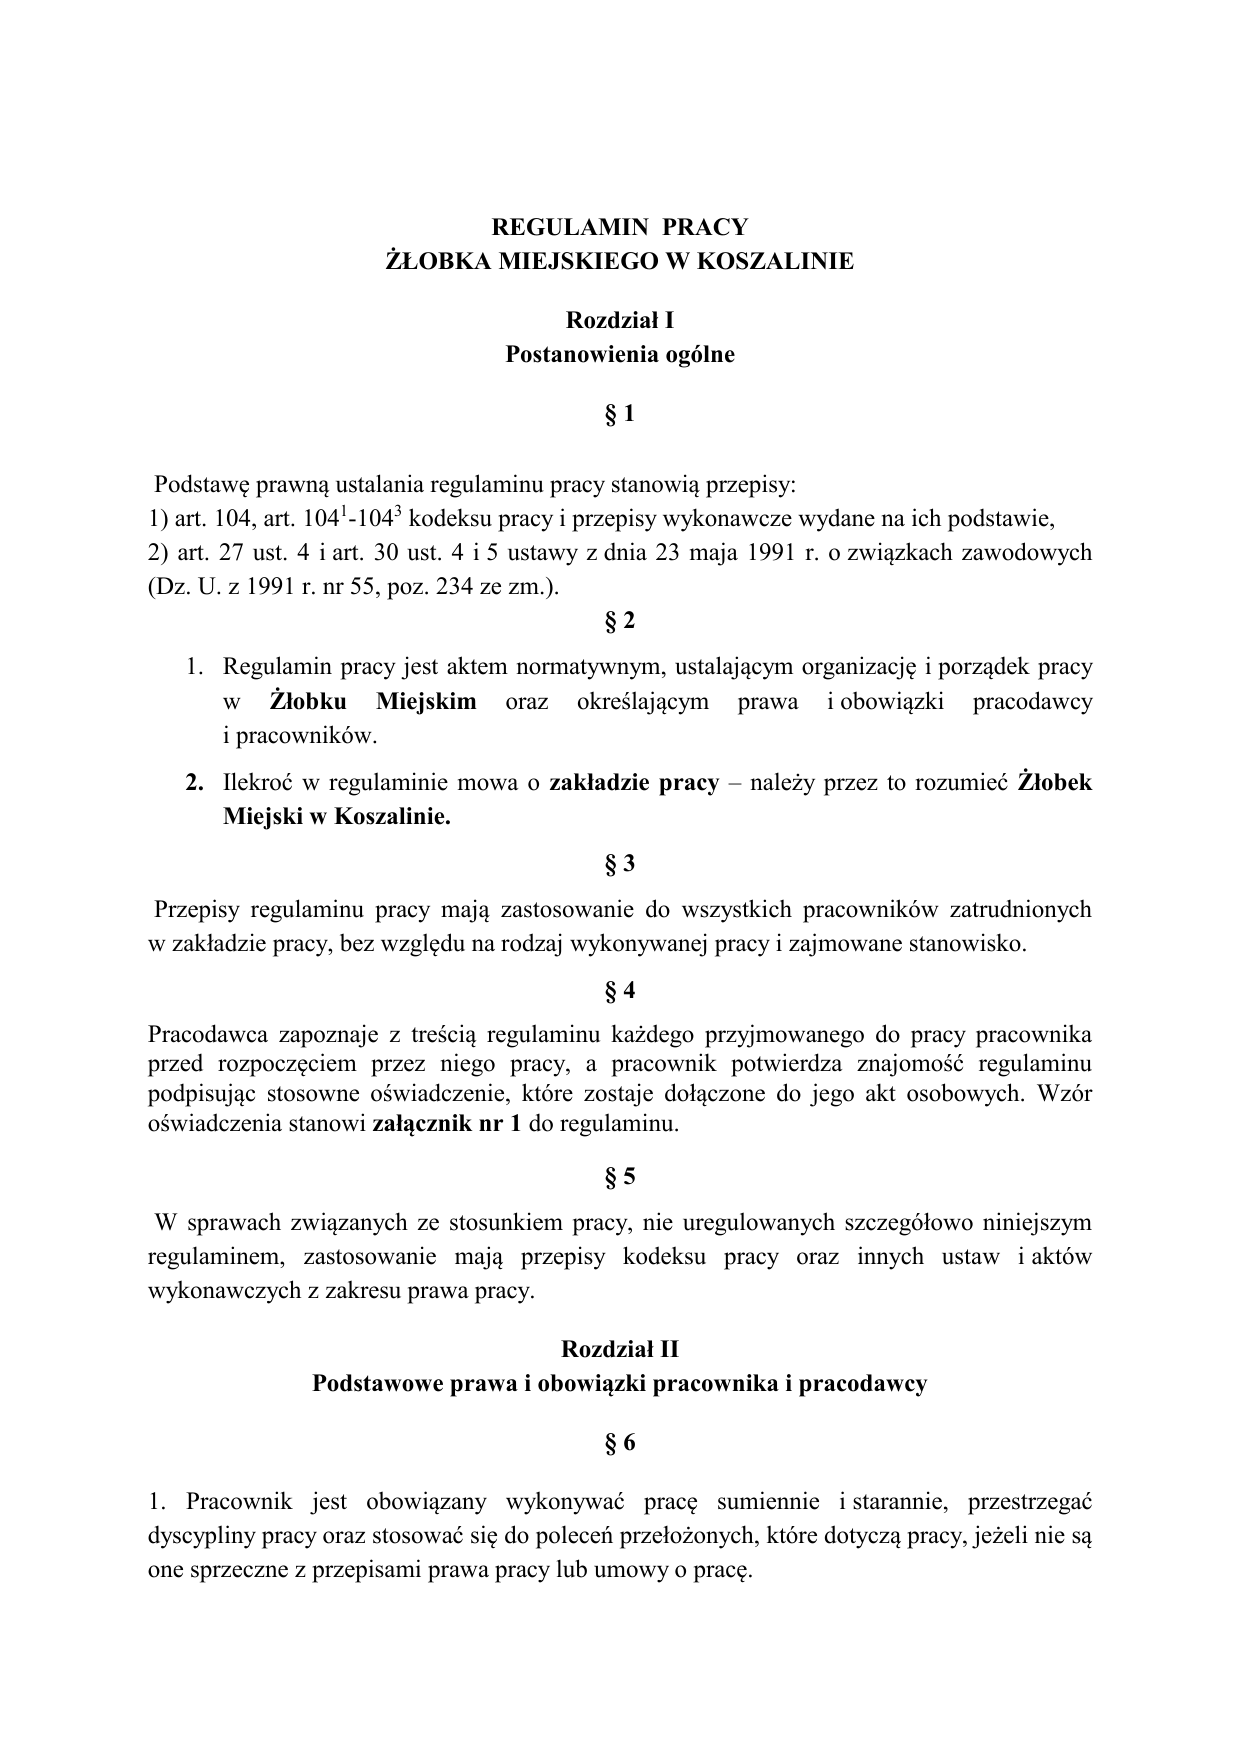 Art 3 Pkt 1 Ustawy Z Dnia 28 Listopada 2003 Regulamin pracy - Żłobek Miejski w Koszalinie